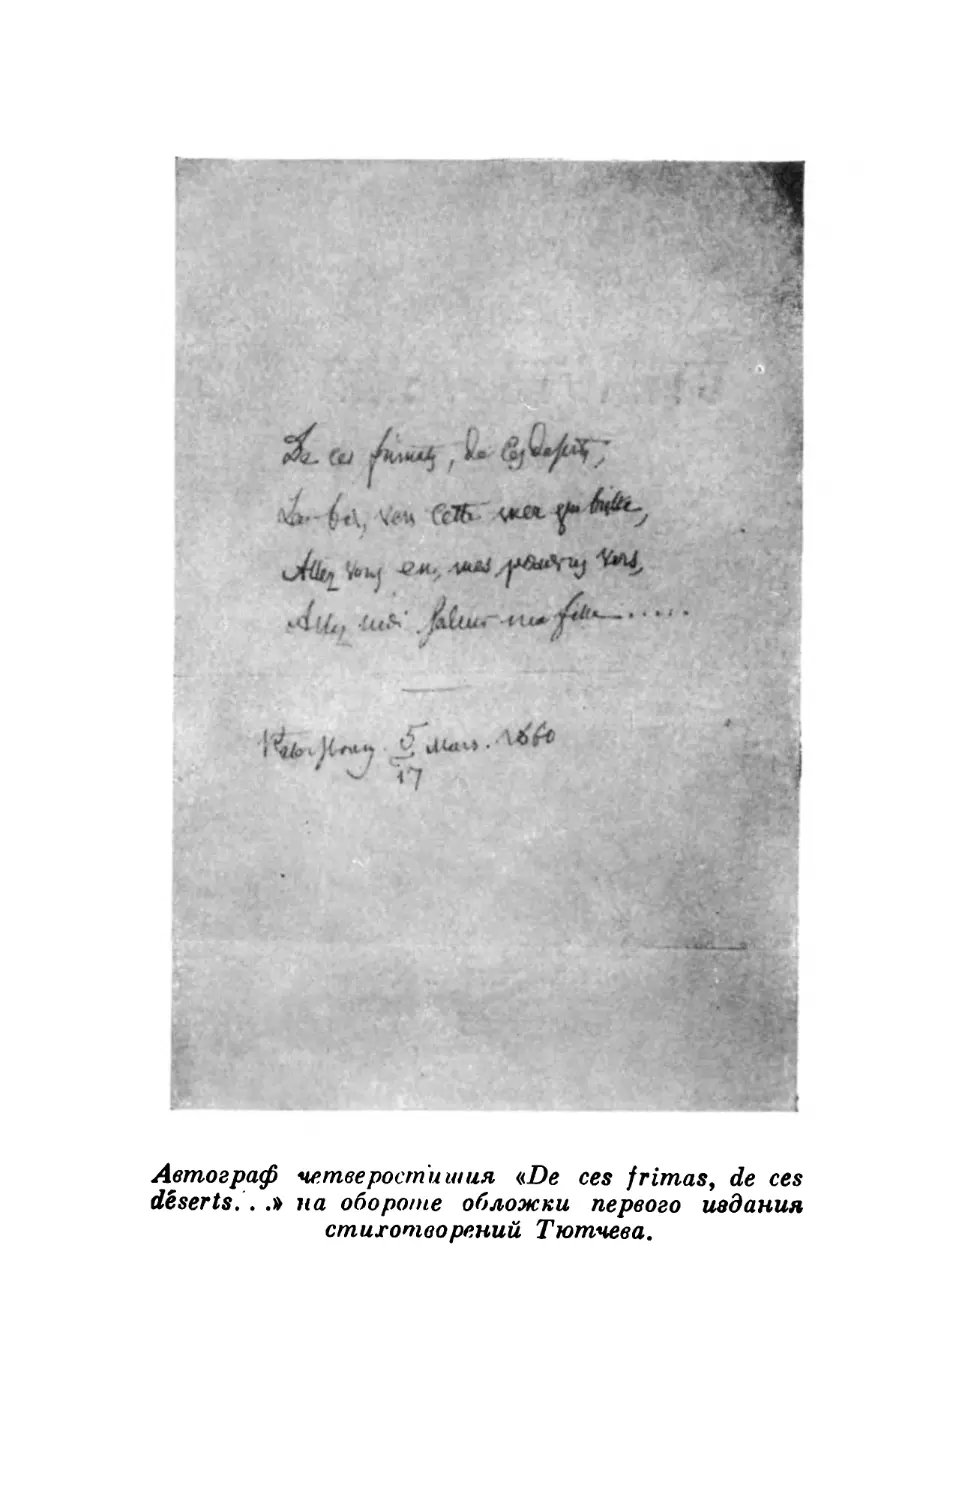 Вклейка. Автограф четверостишия «De ces frimas, de ces deserts...» на обороте обложки первого издания стихотворений Тютчева